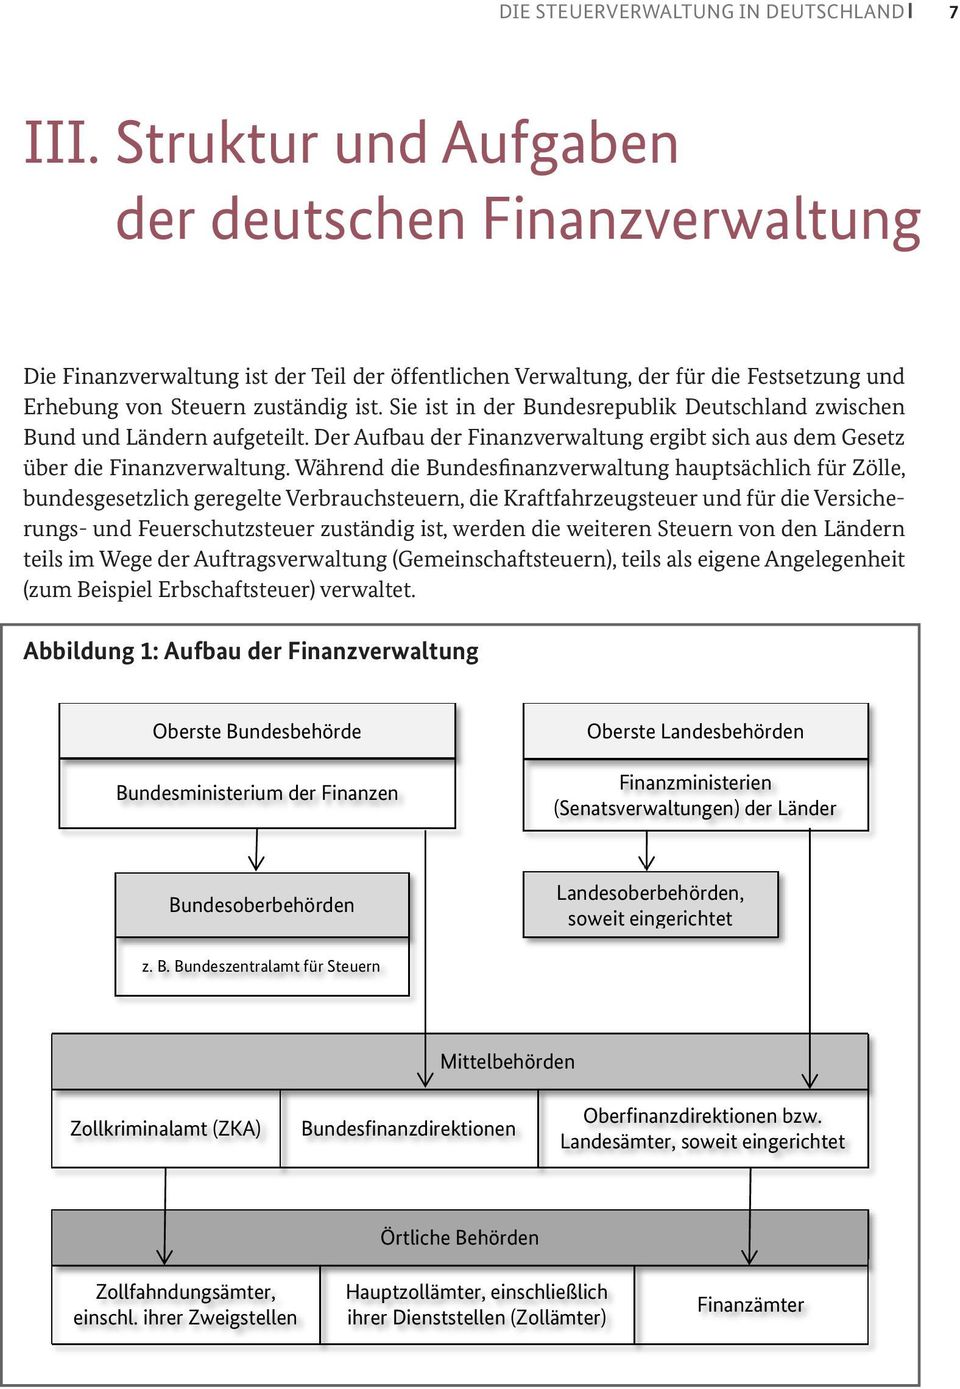 Sie ist in der Bundesrepublik Deutschland zwischen Bund und Ländern aufgeteilt. Der Aufbau der Finanzverwaltung ergibt sich aus dem Gesetz über die Finanzverwaltung.